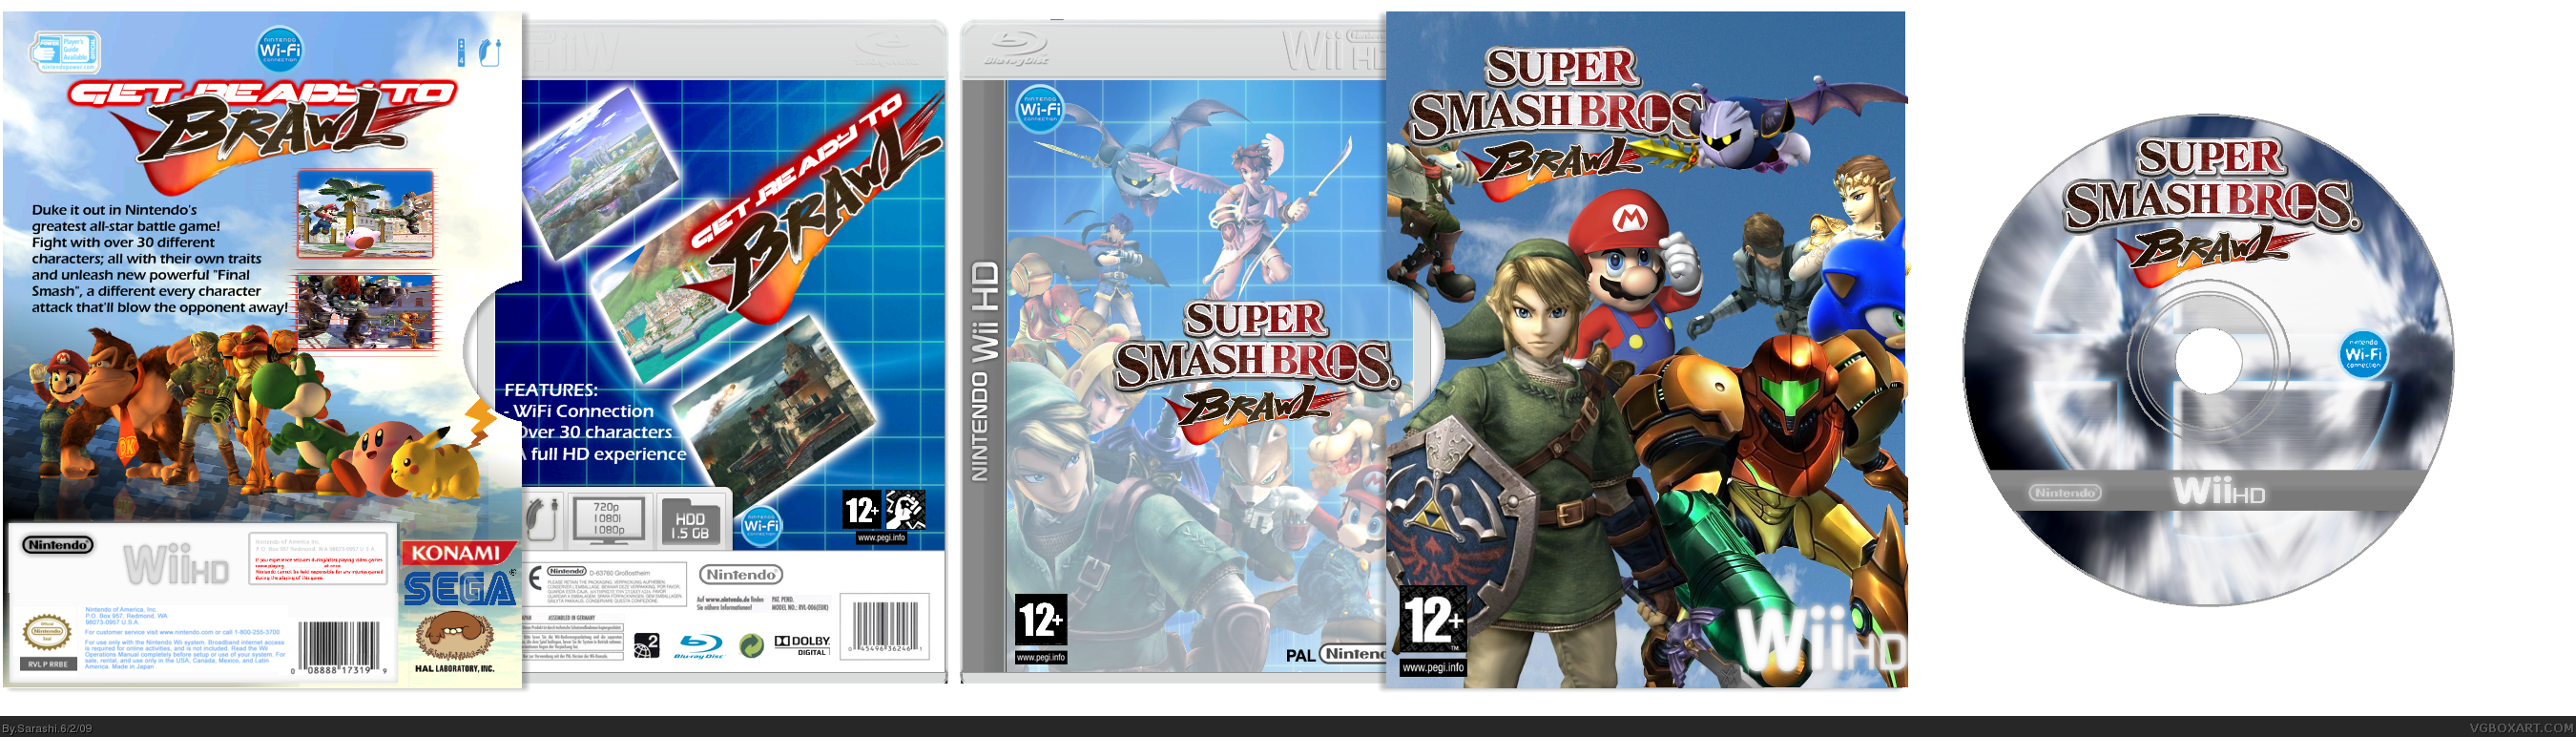 Super Smash Bros. Brawl (WiiHD) box cover